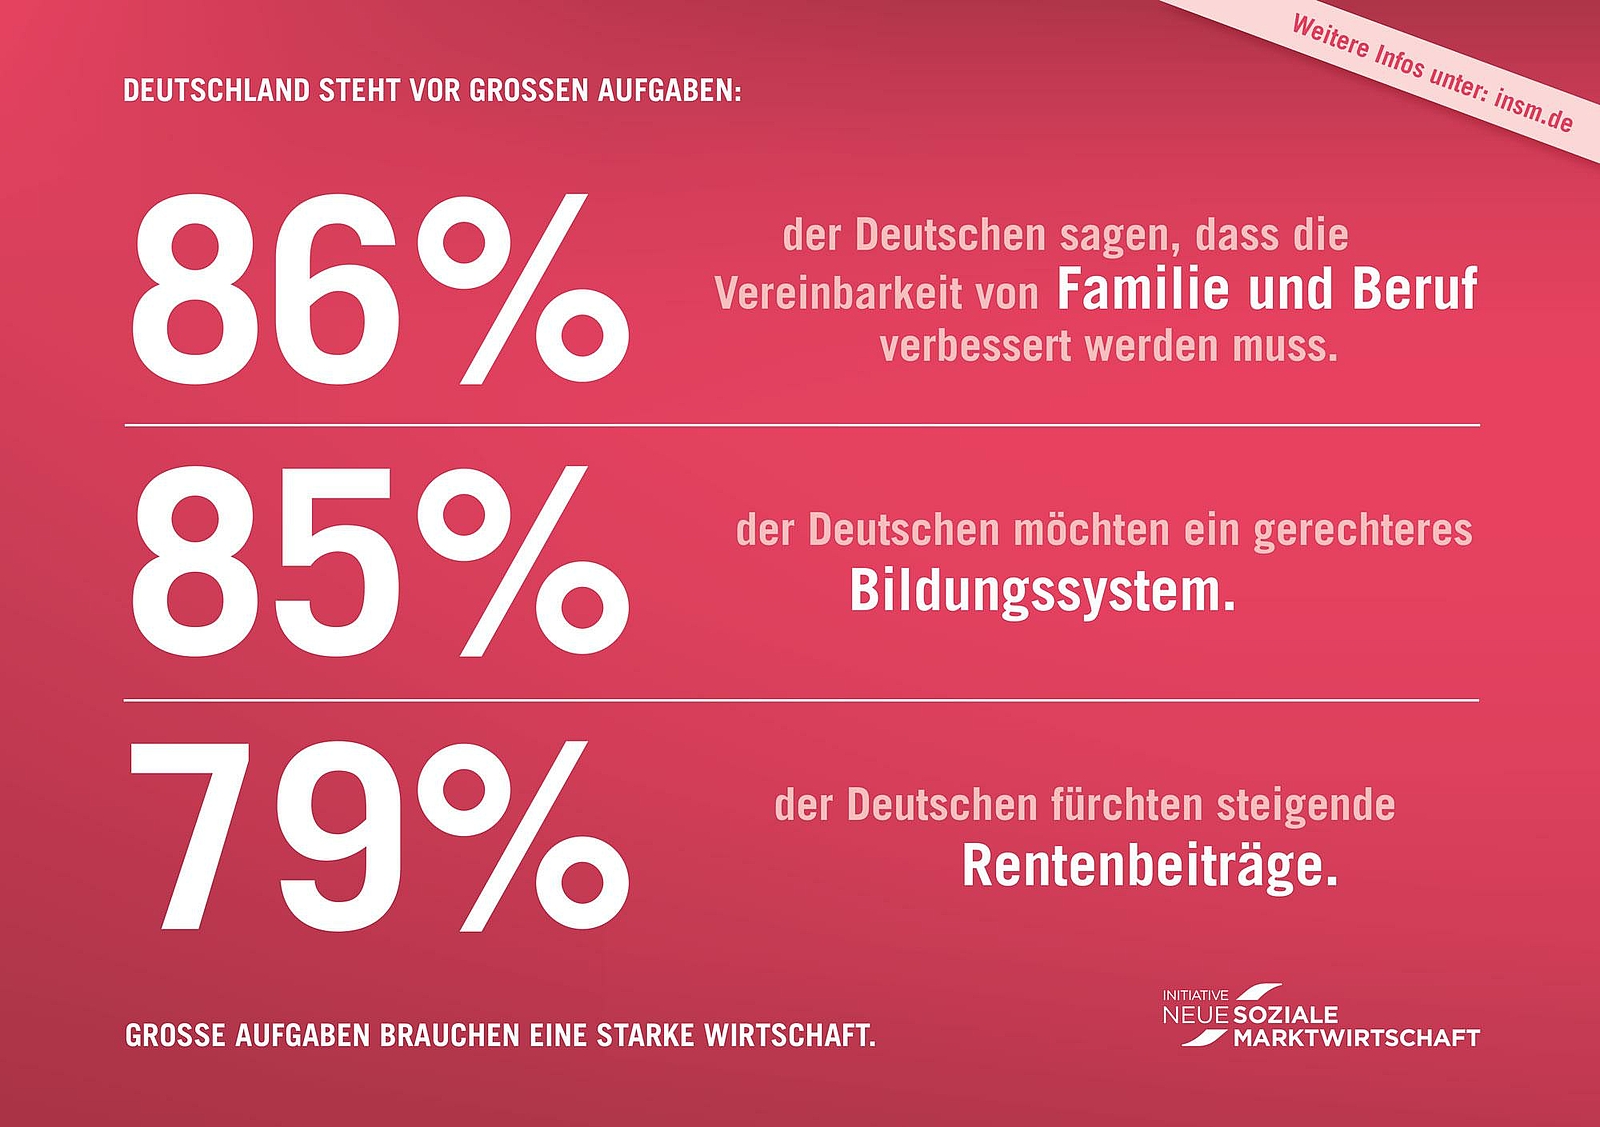 Anzeigenmotiv der INSM - 86% der Deutschen sagen, dass die Vereinbarkeit von Familie und Beruf verbessert werden muss.